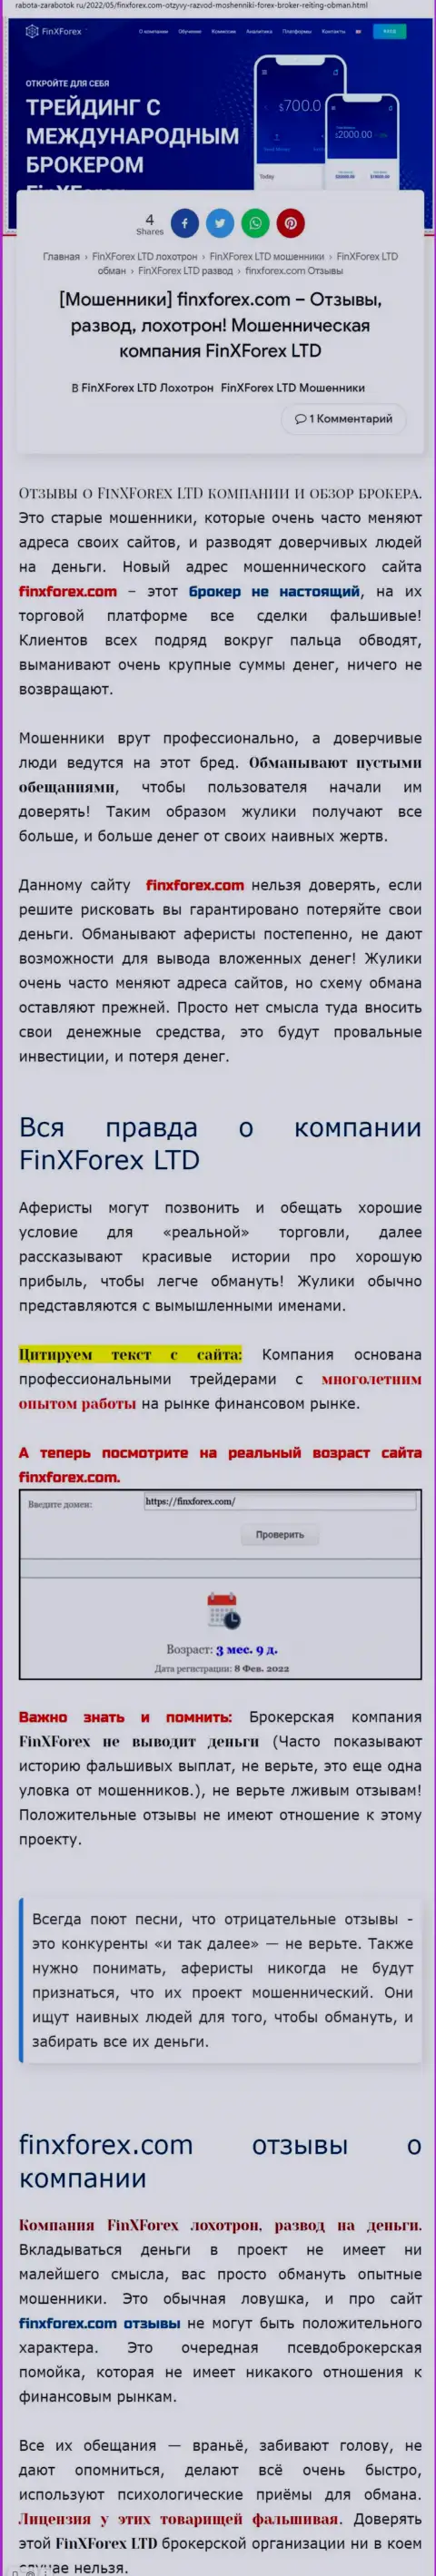 Автор обзора об FinXForex Com утверждает, что в FinXForex Com лохотронят